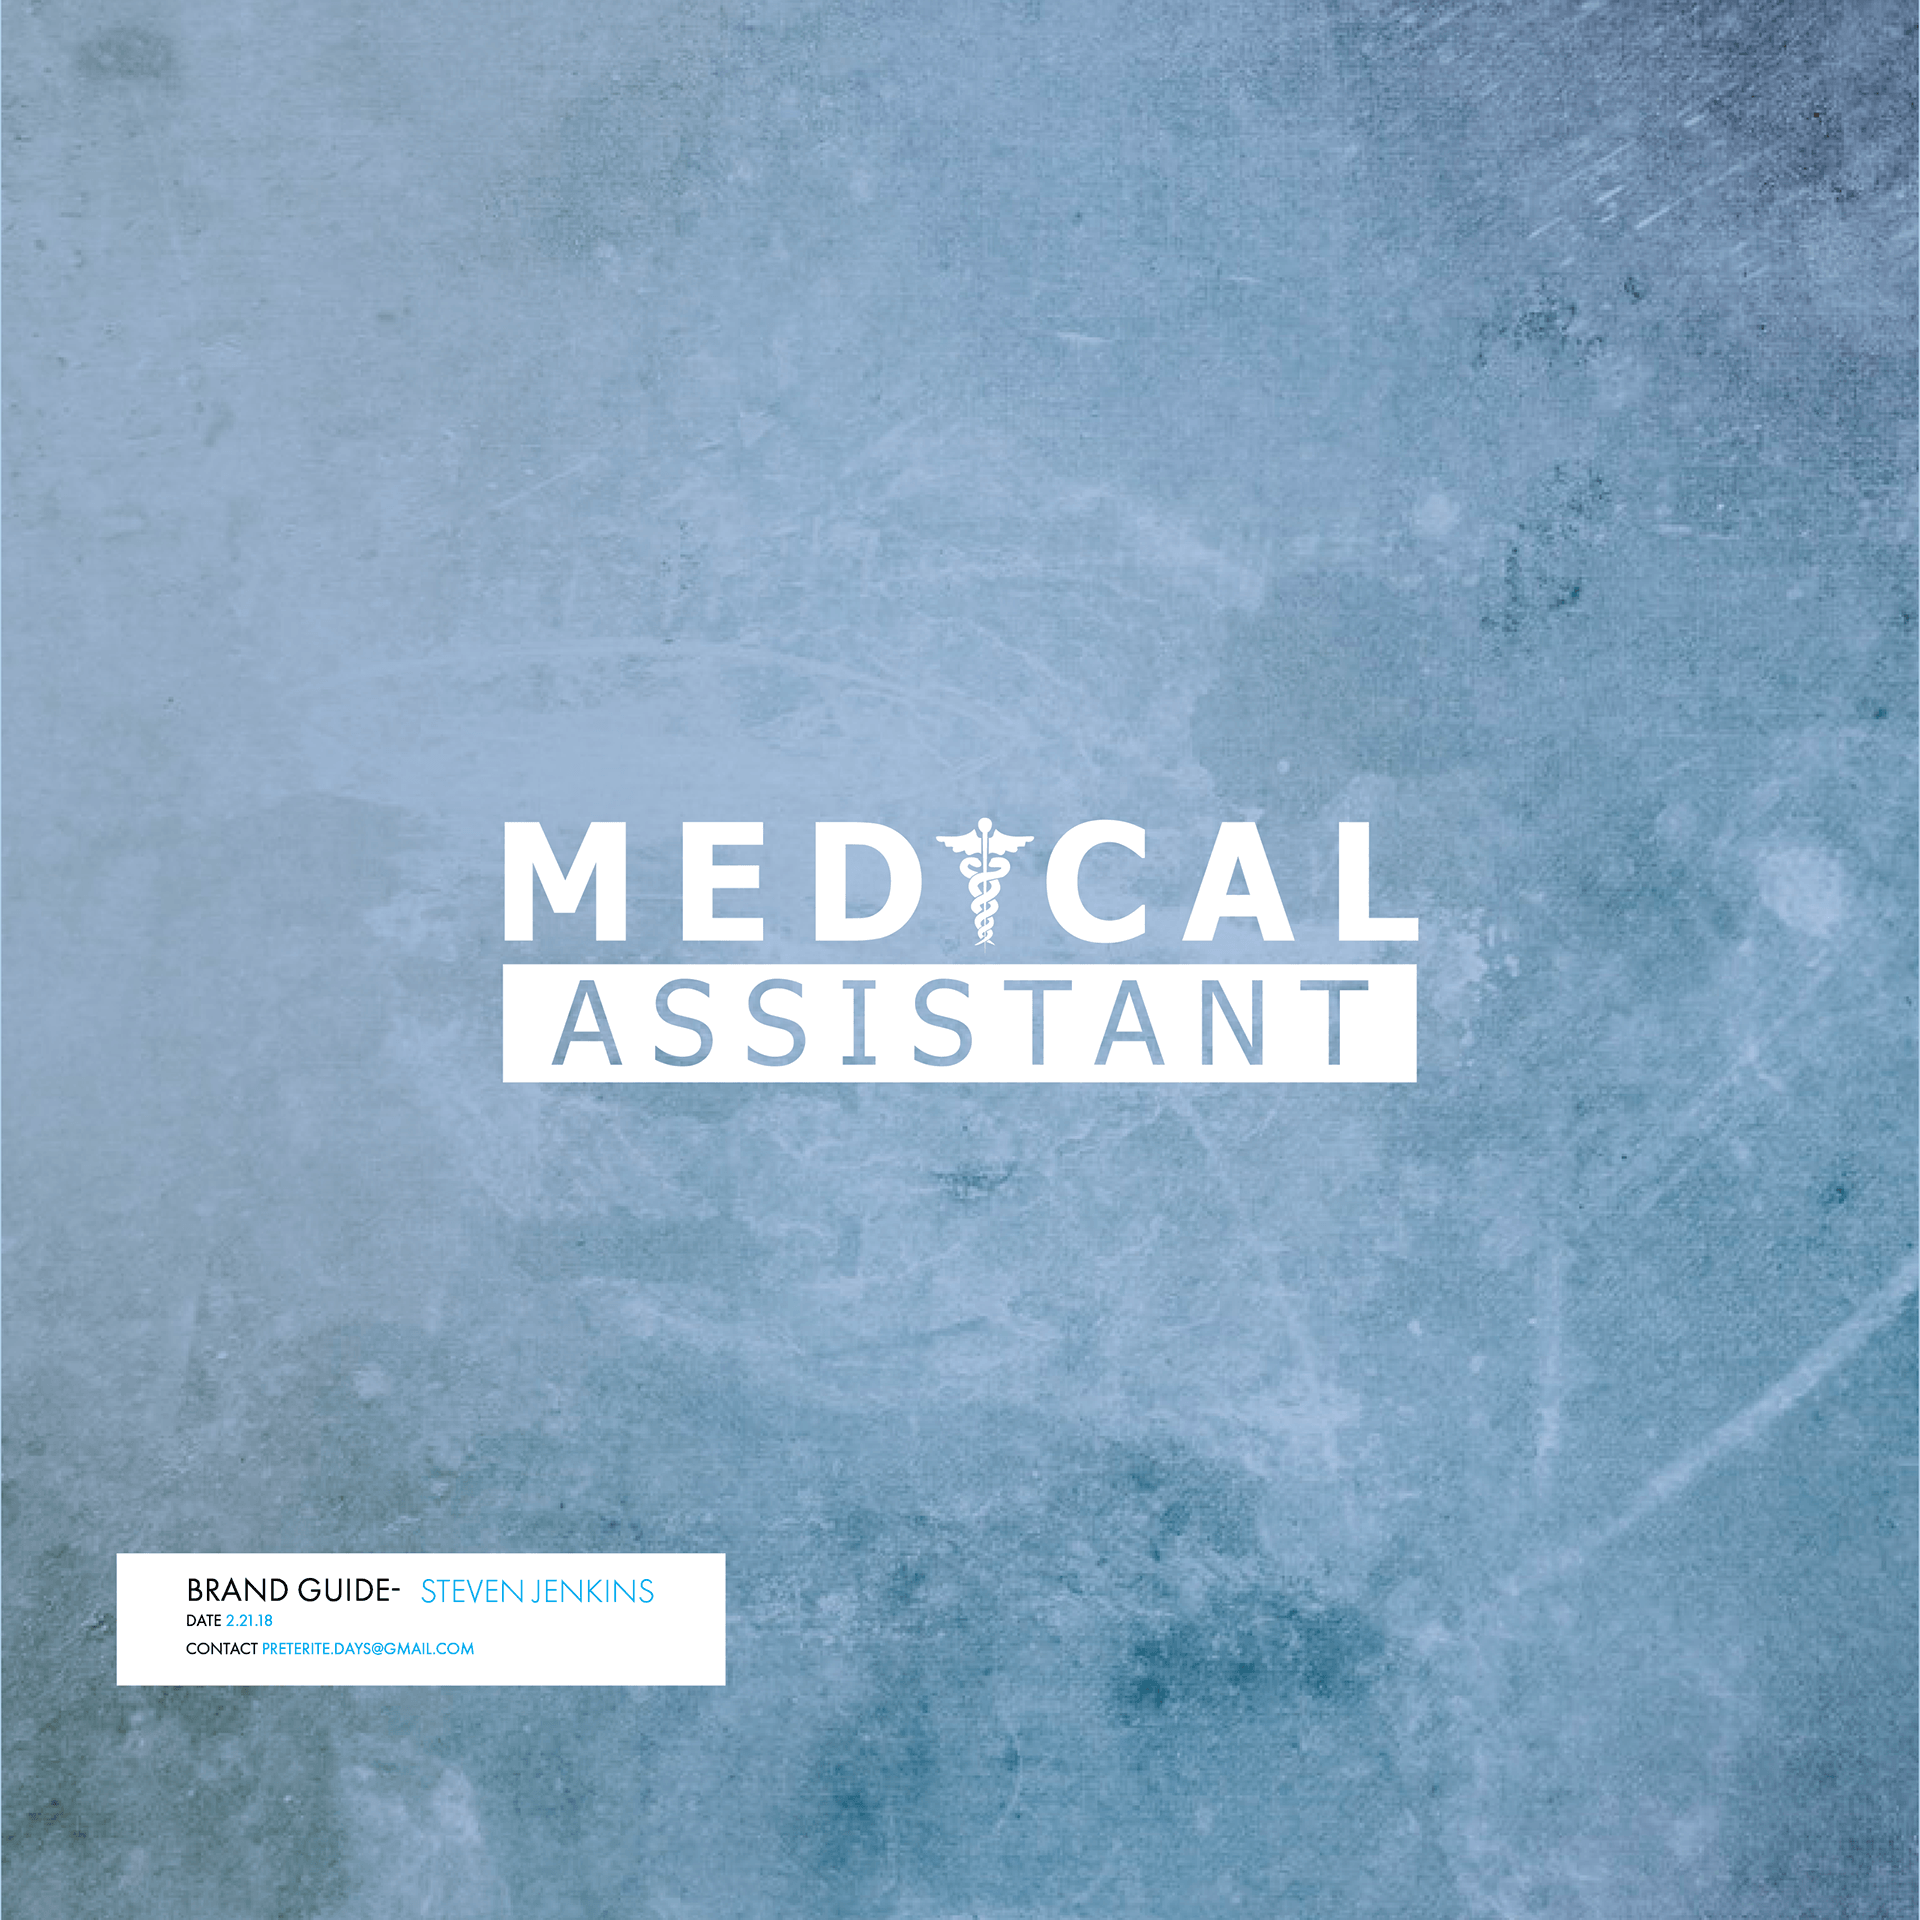 Medical Assistant Logo - Steven Jenkins - Medical Assistant Logo Design